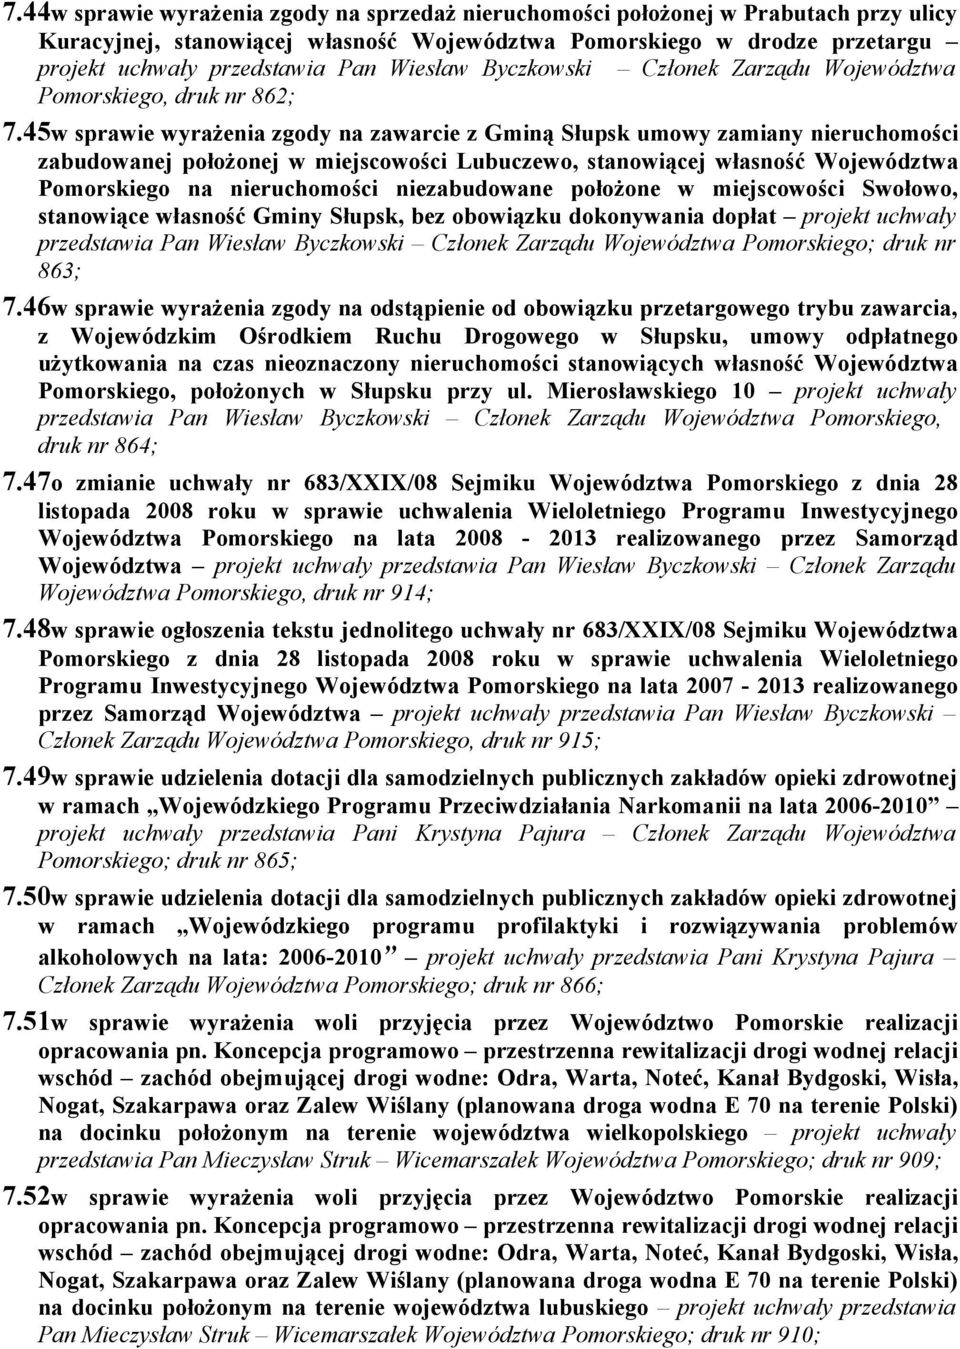 45w sprawie wyrażenia zgody na zawarcie z Gminą Słupsk umowy zamiany nieruchomości zabudowanej położonej w miejscowości Lubuczewo, stanowiącej własność Województwa Pomorskiego na nieruchomości